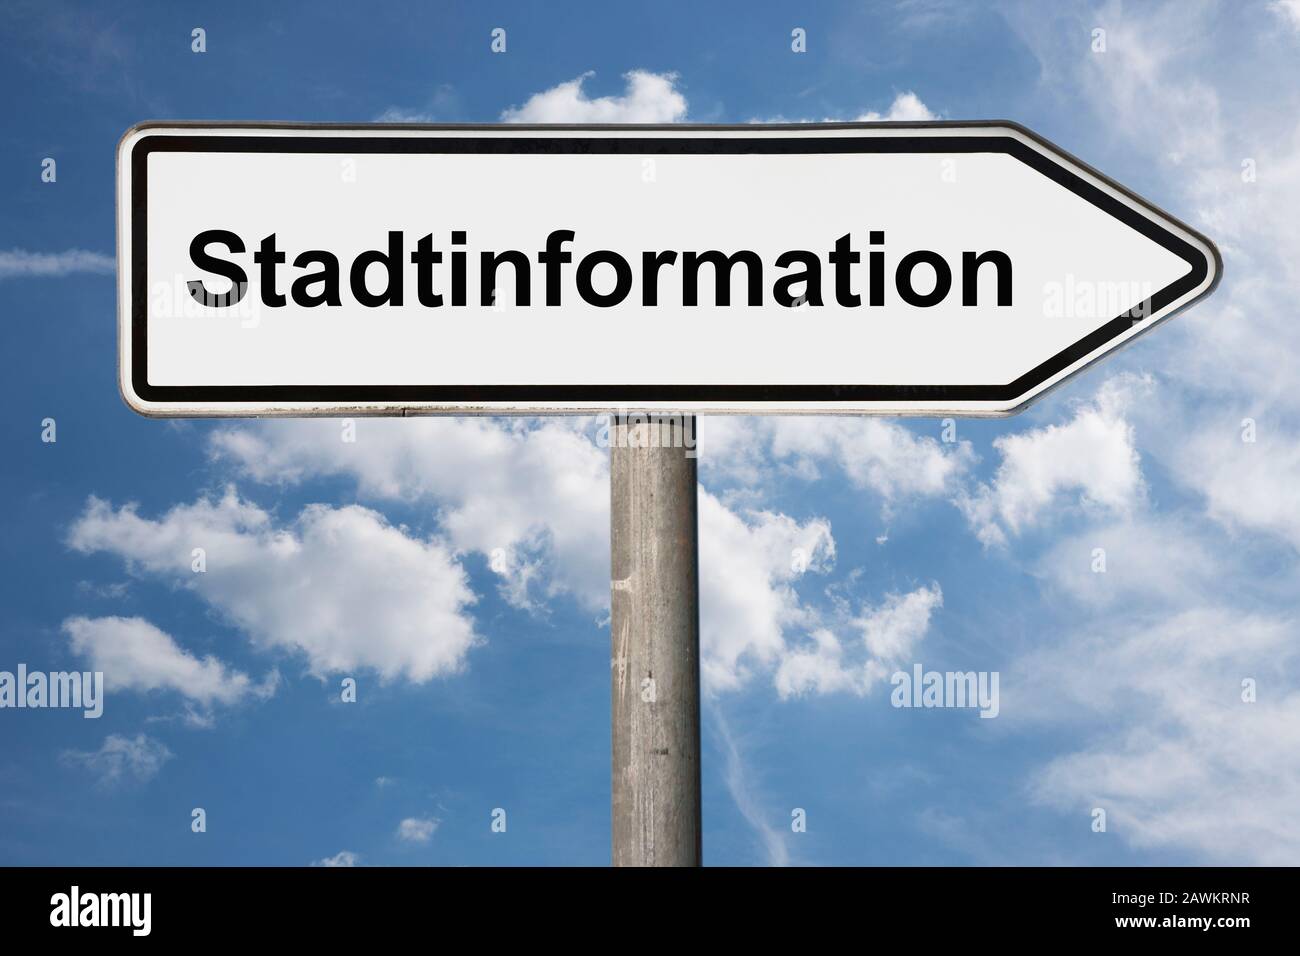 Foto di dettaglio di un cartello con la scritta Stadtinformation (informazioni sulla città) Foto Stock